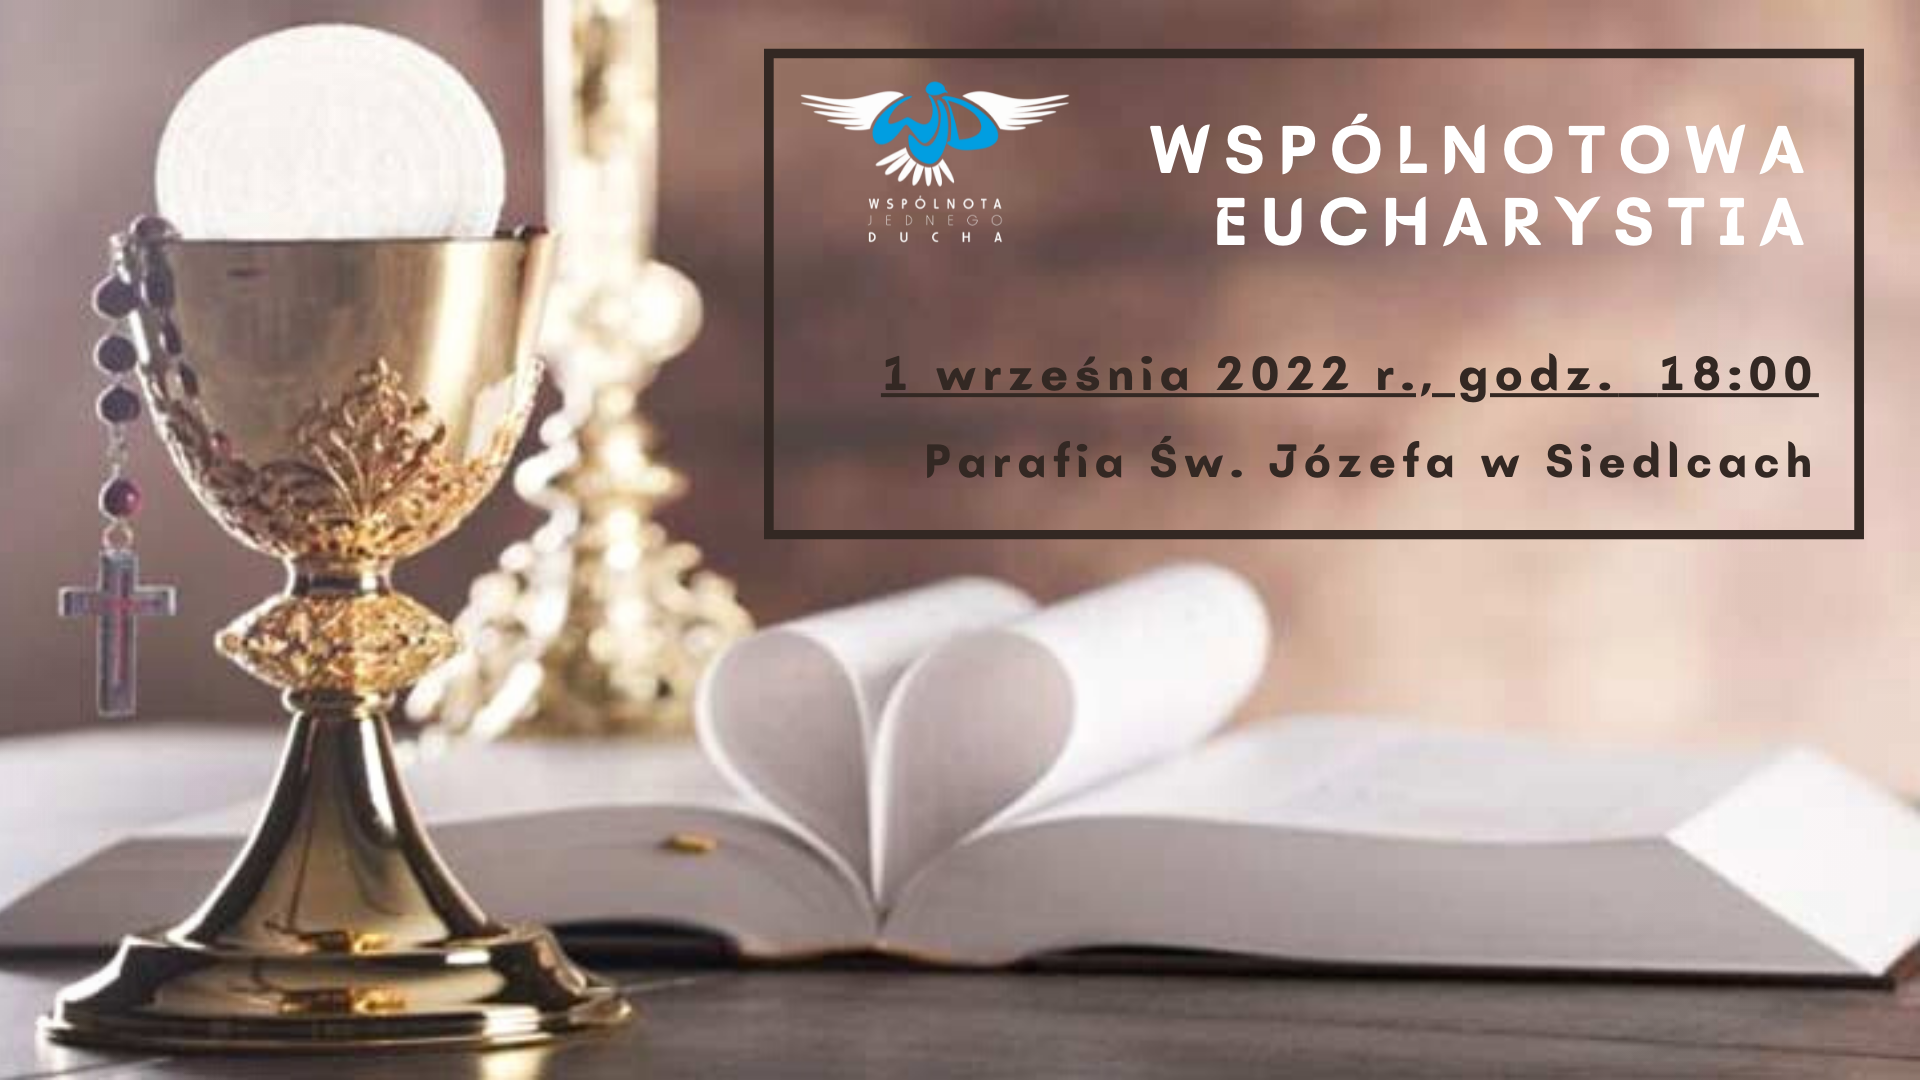 Wspólnotowa Eucharystia (01.09.2022)